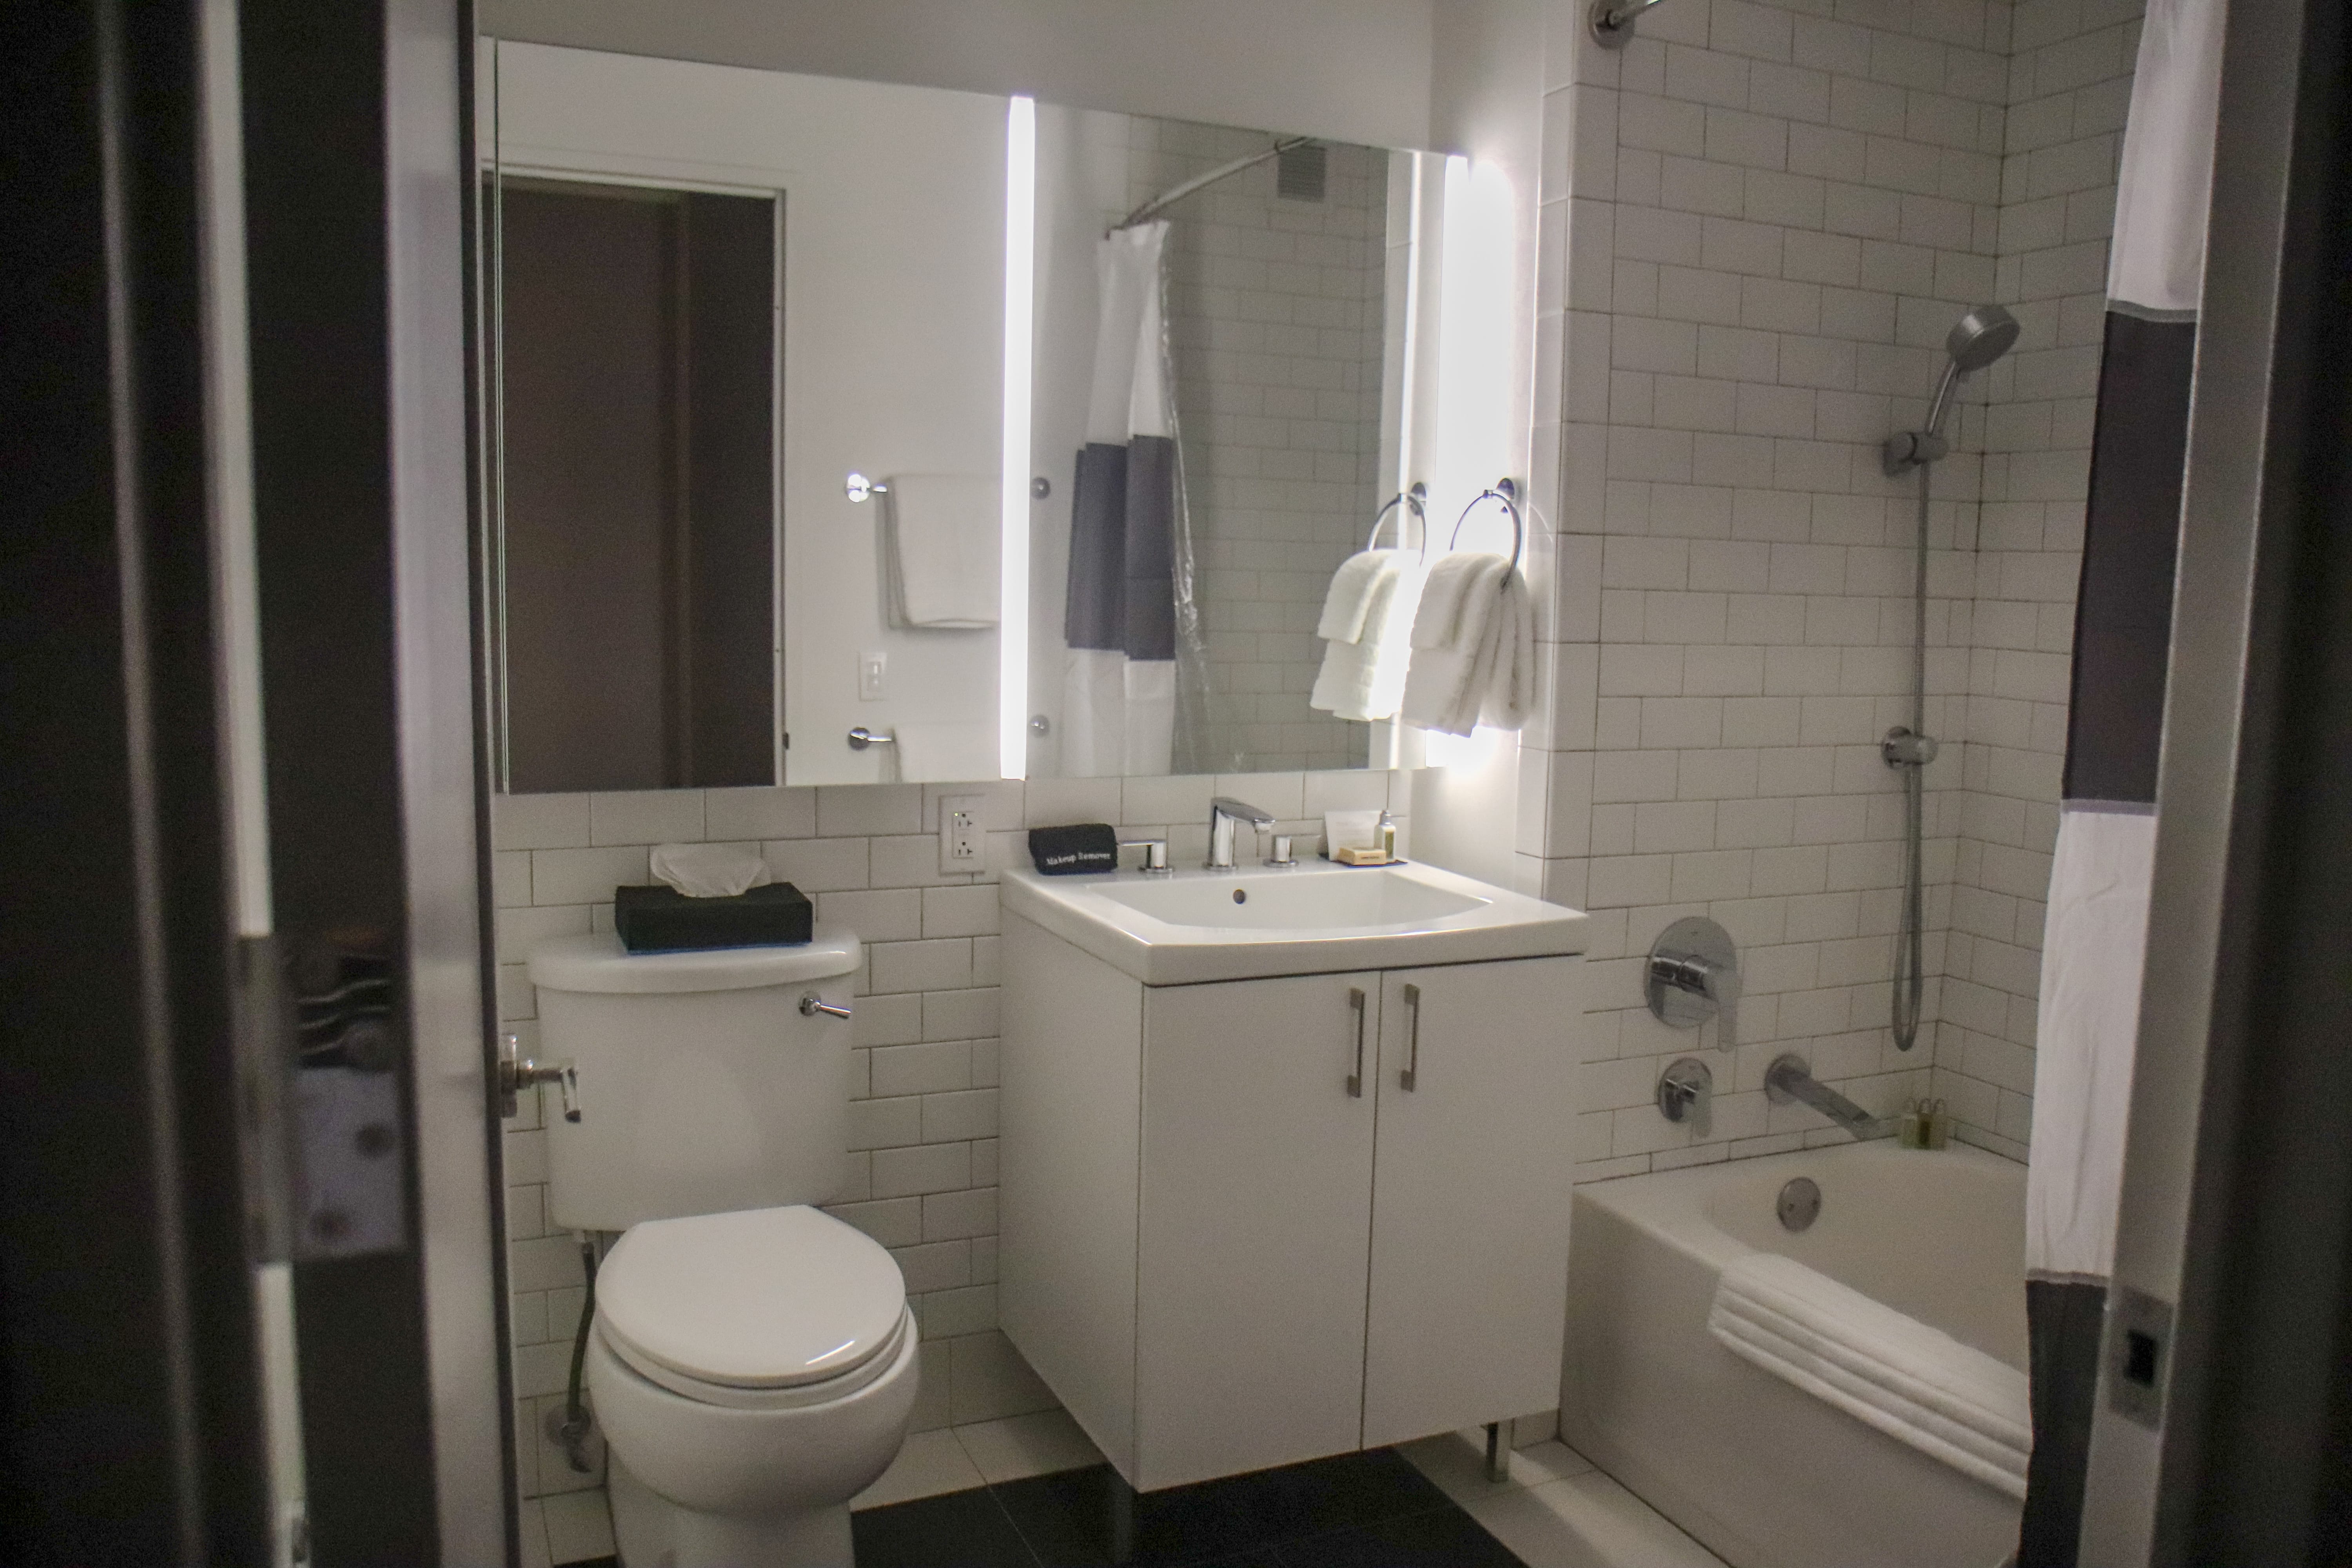 Q&A Hotel Review - Executive Studio Apartment Bathroom